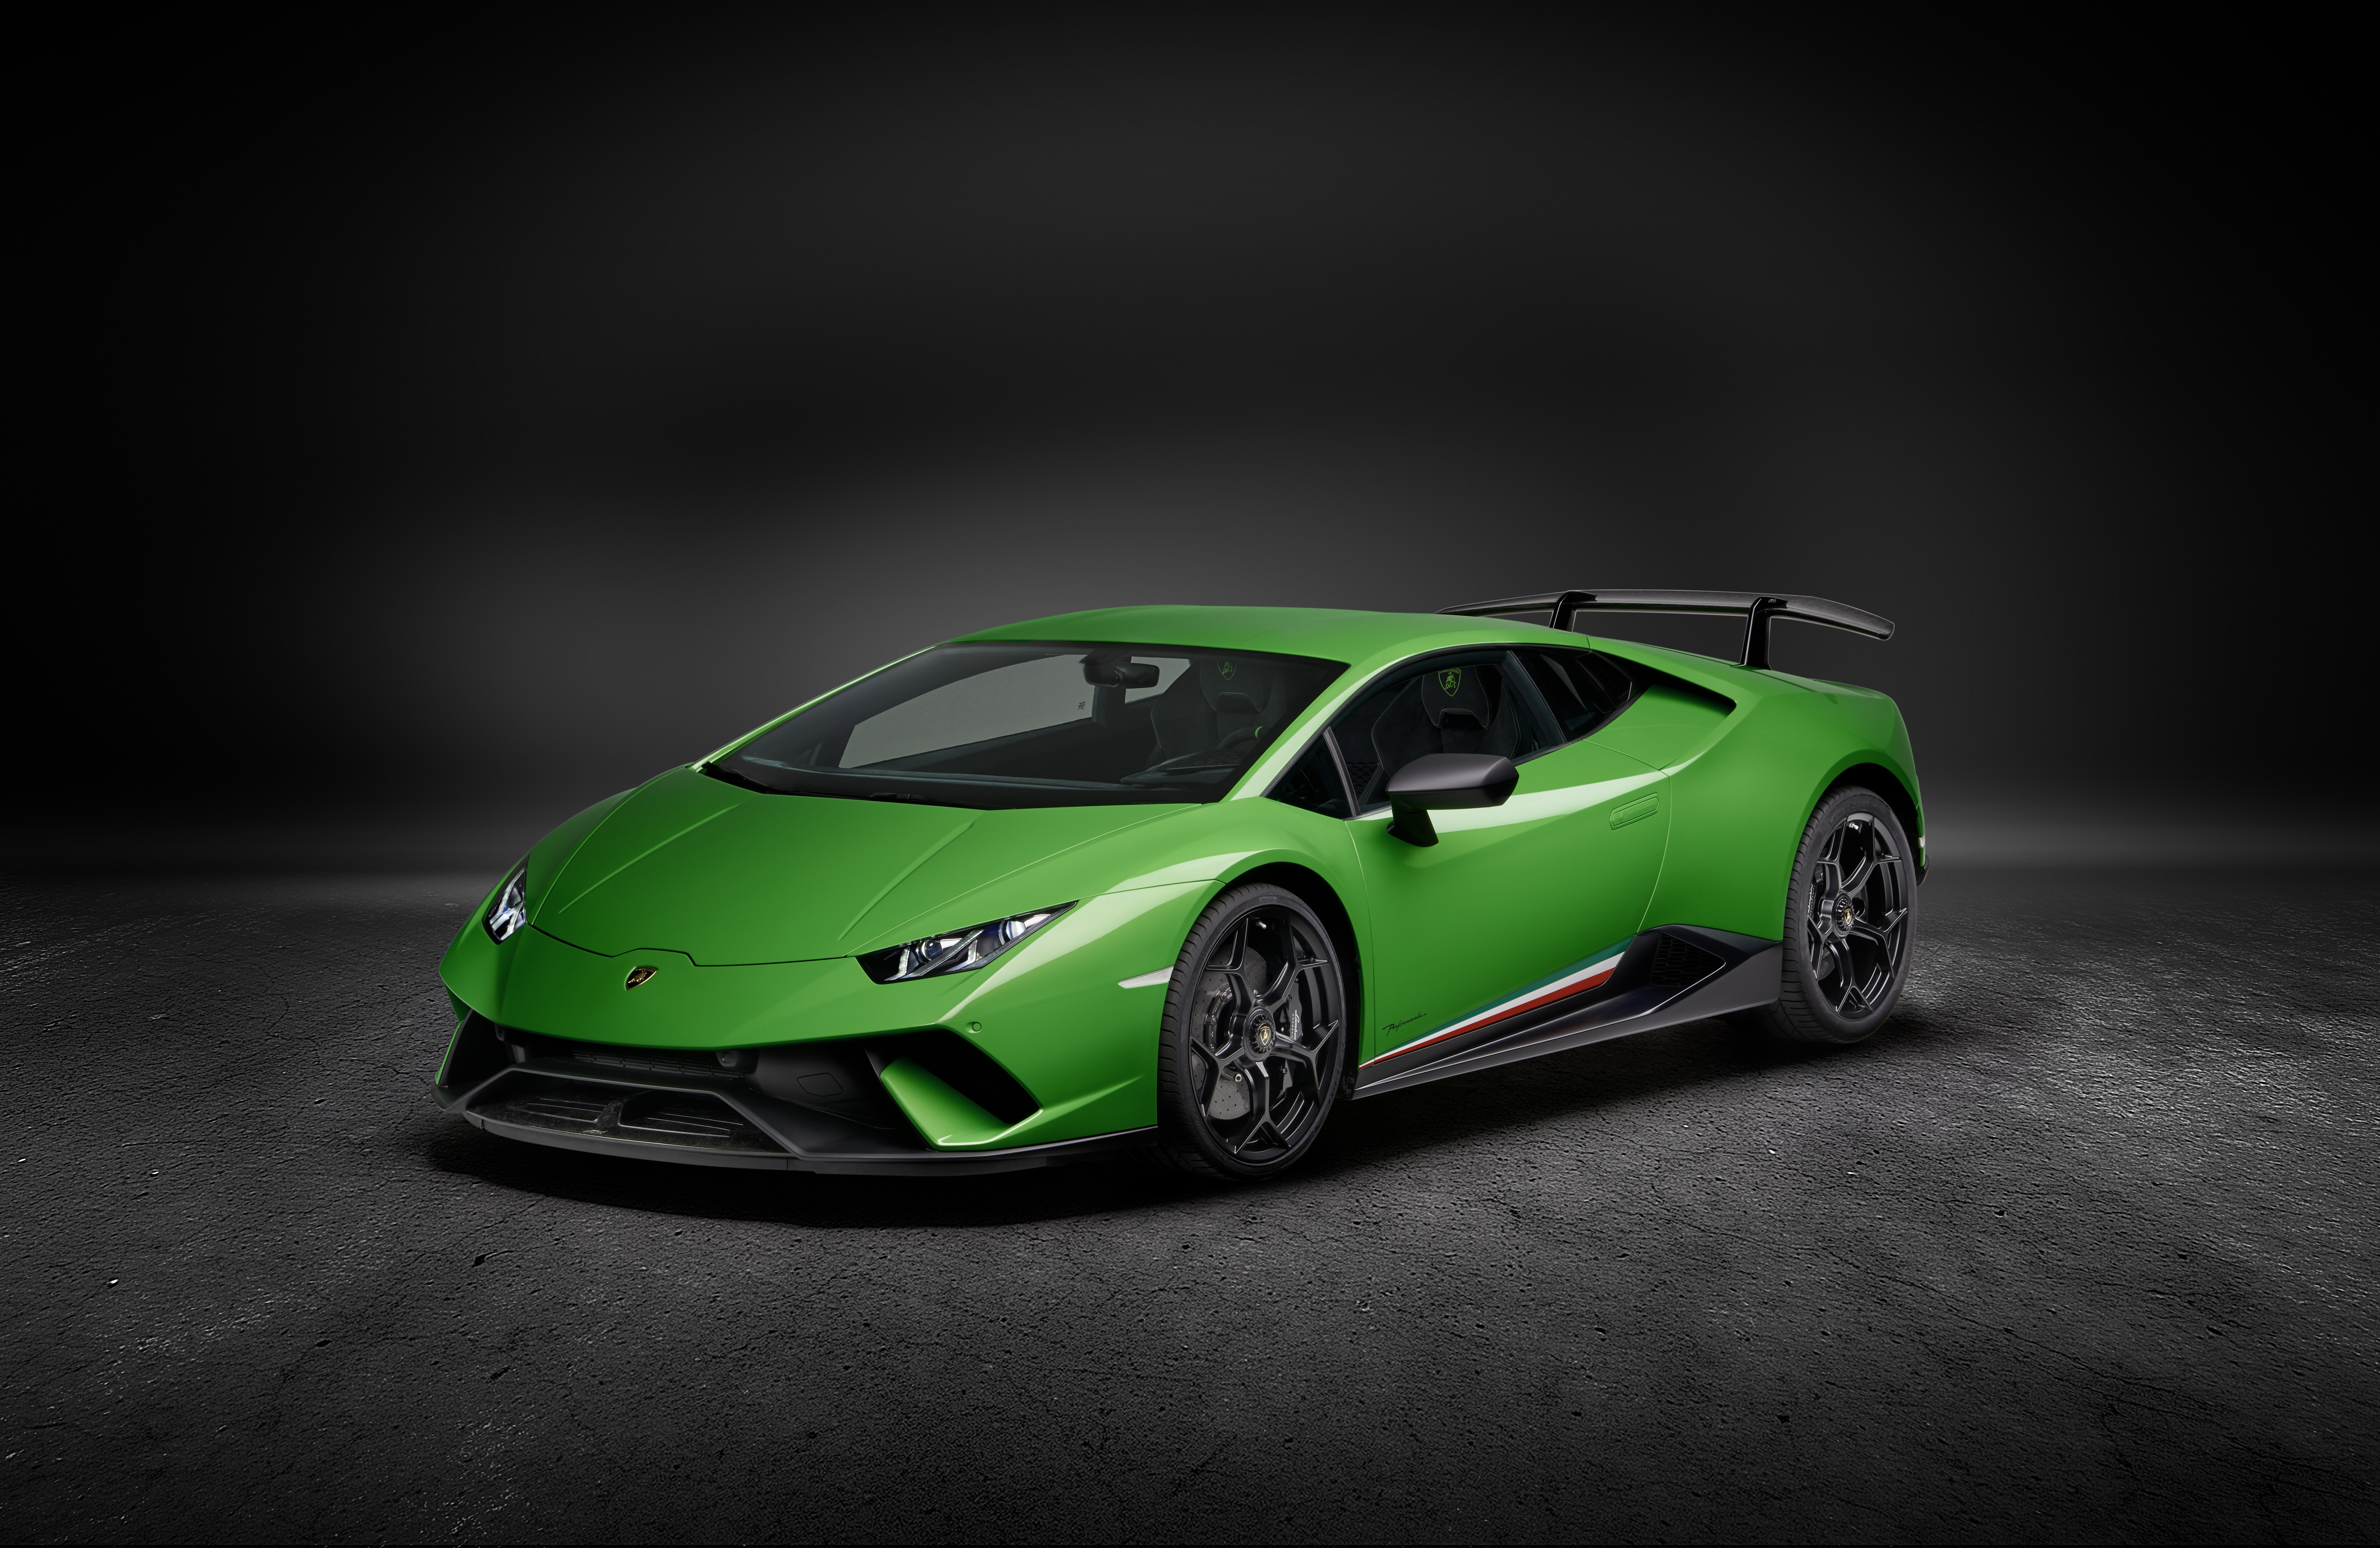 Lamborghini Huracan Performante 2019 8k, HD Cars, 4k ...